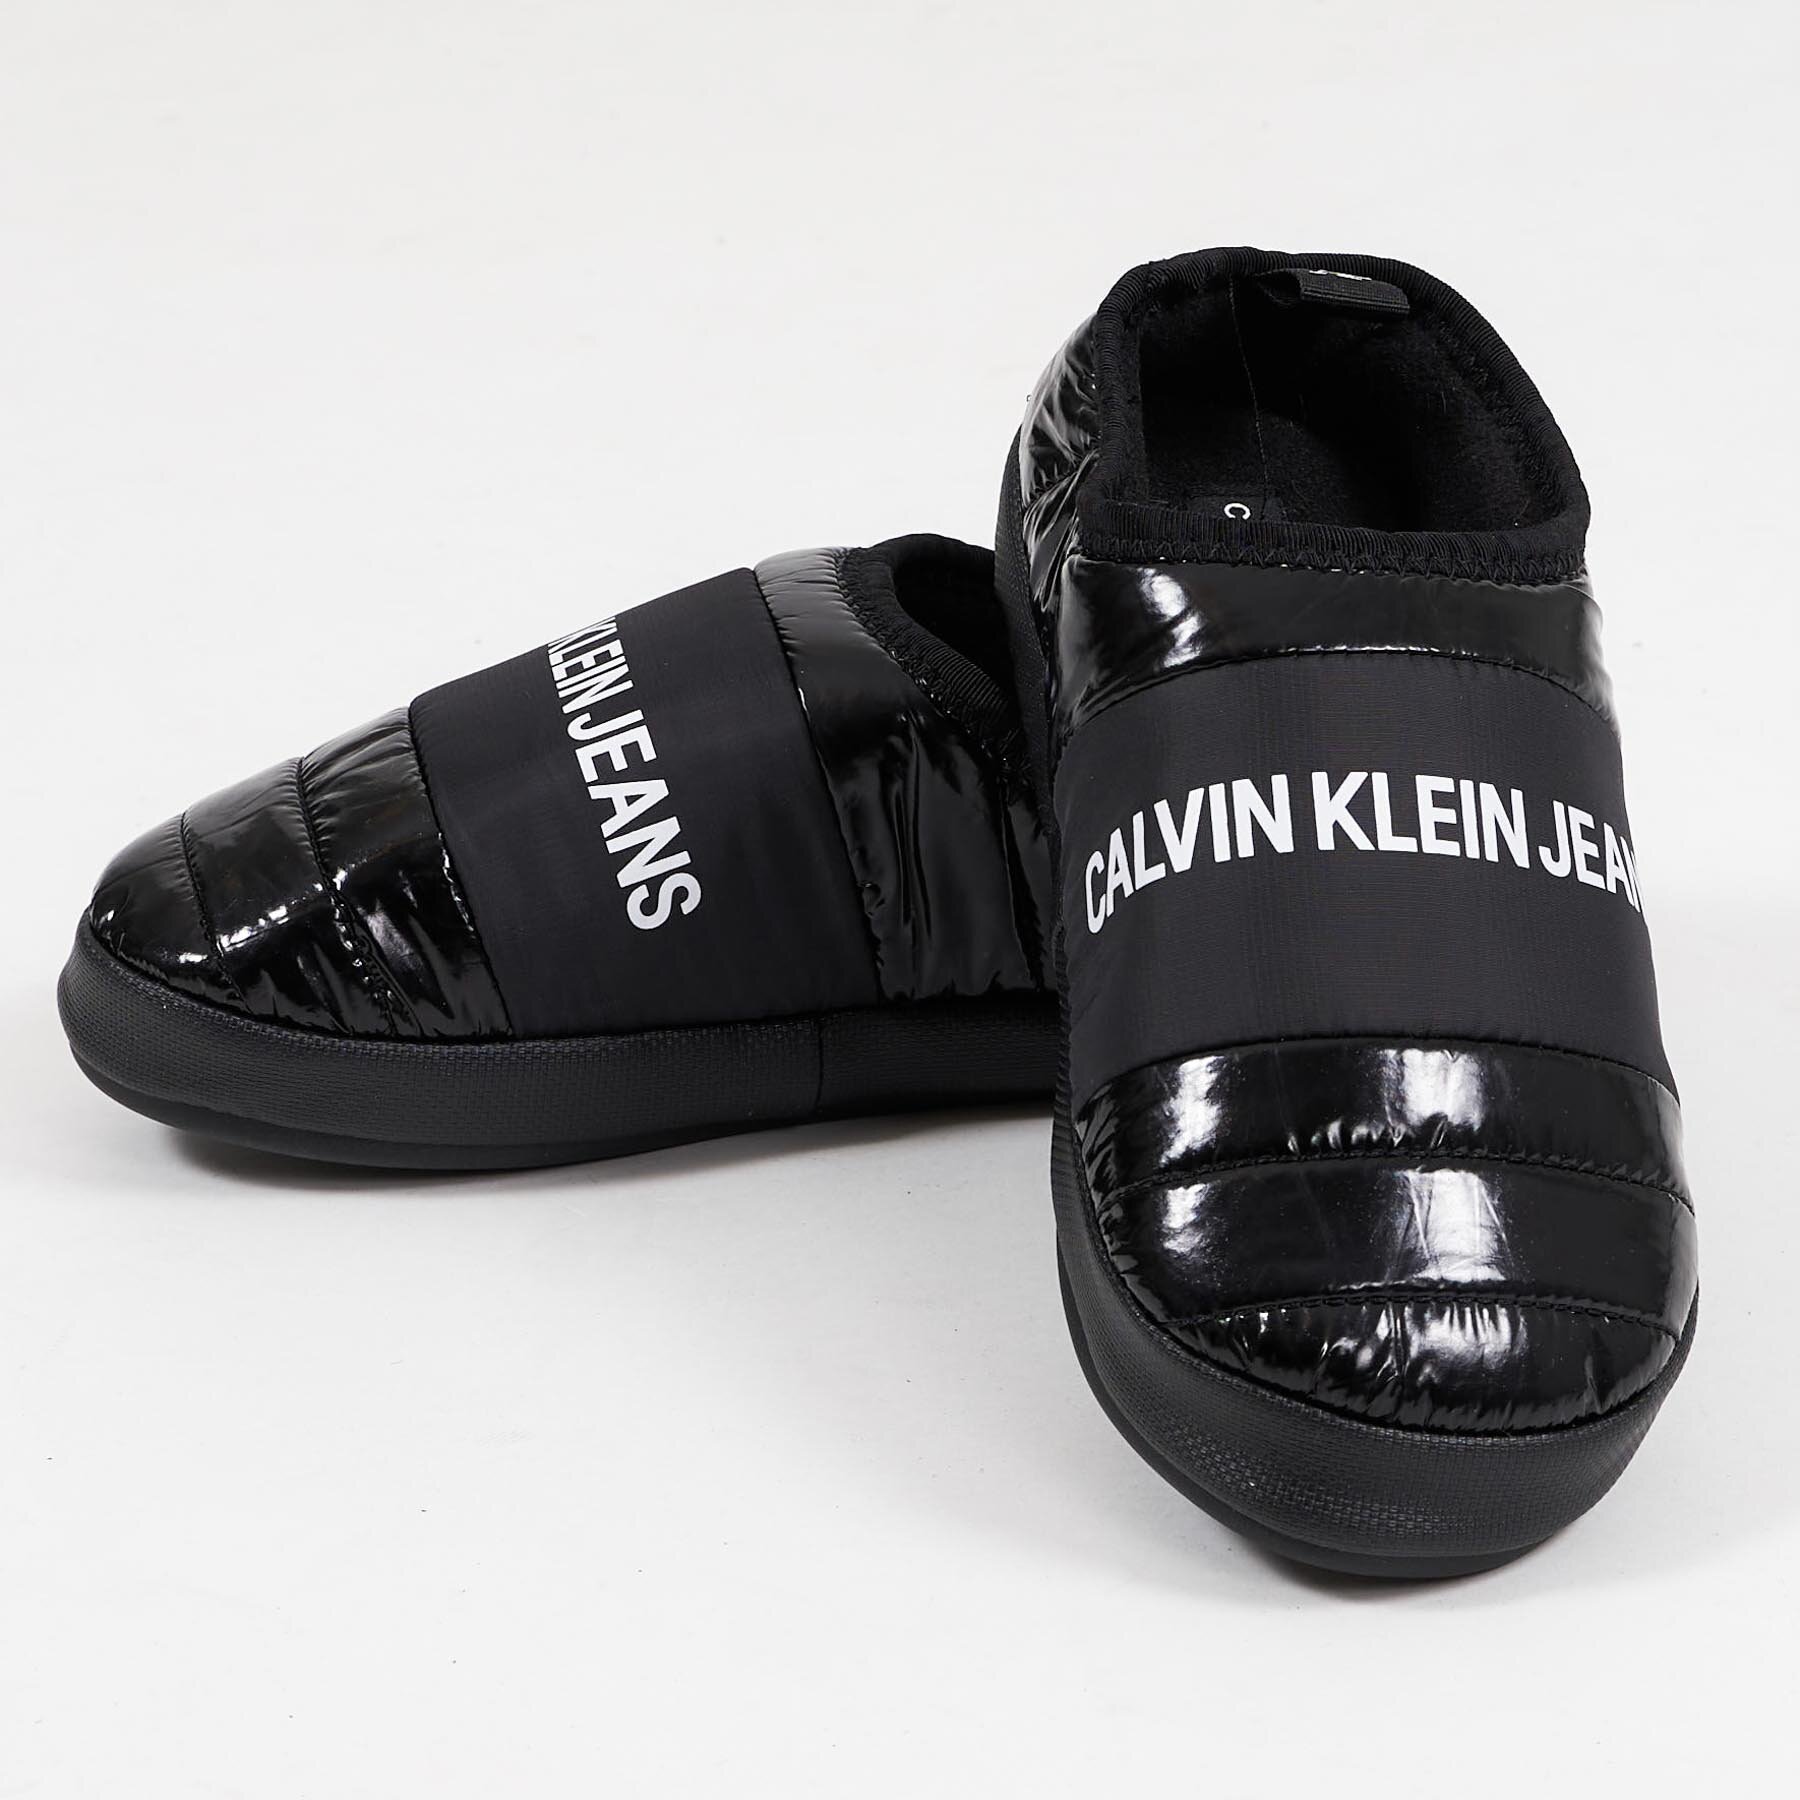 meget Forbløffe Nyttig Køb Calvin Klein Shoes Home shoe slipper idag. Vi leverer på 1-2 dage